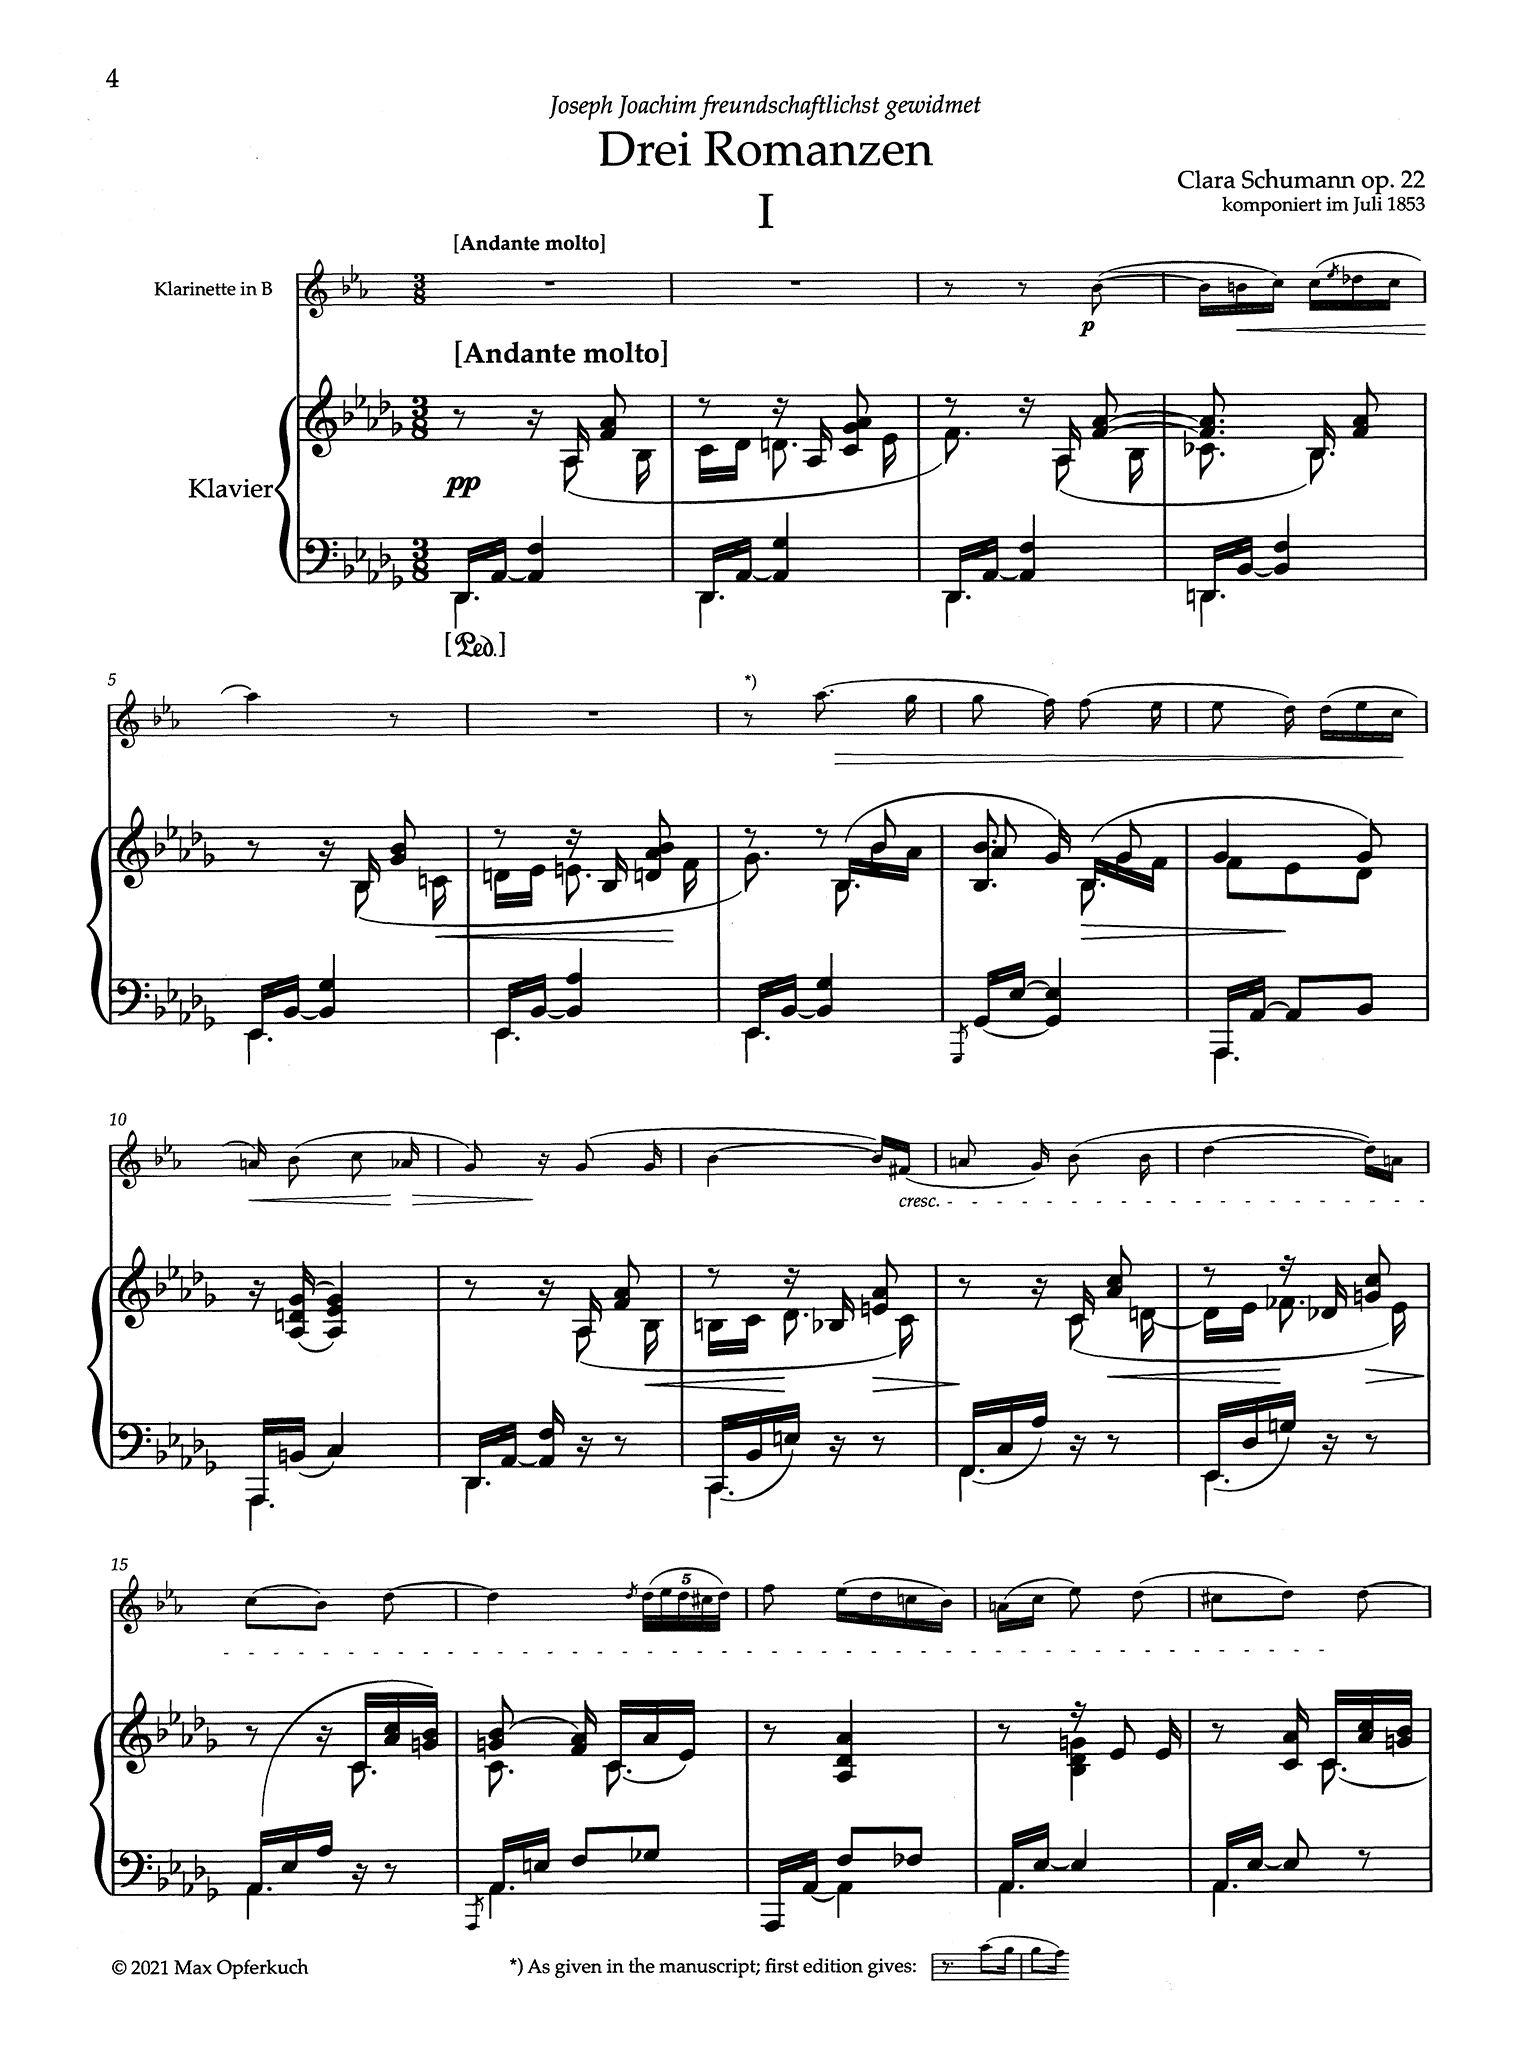 Clara Schumann Drei Romanzen, Op. 22 clarinet arrangement - Movement 1